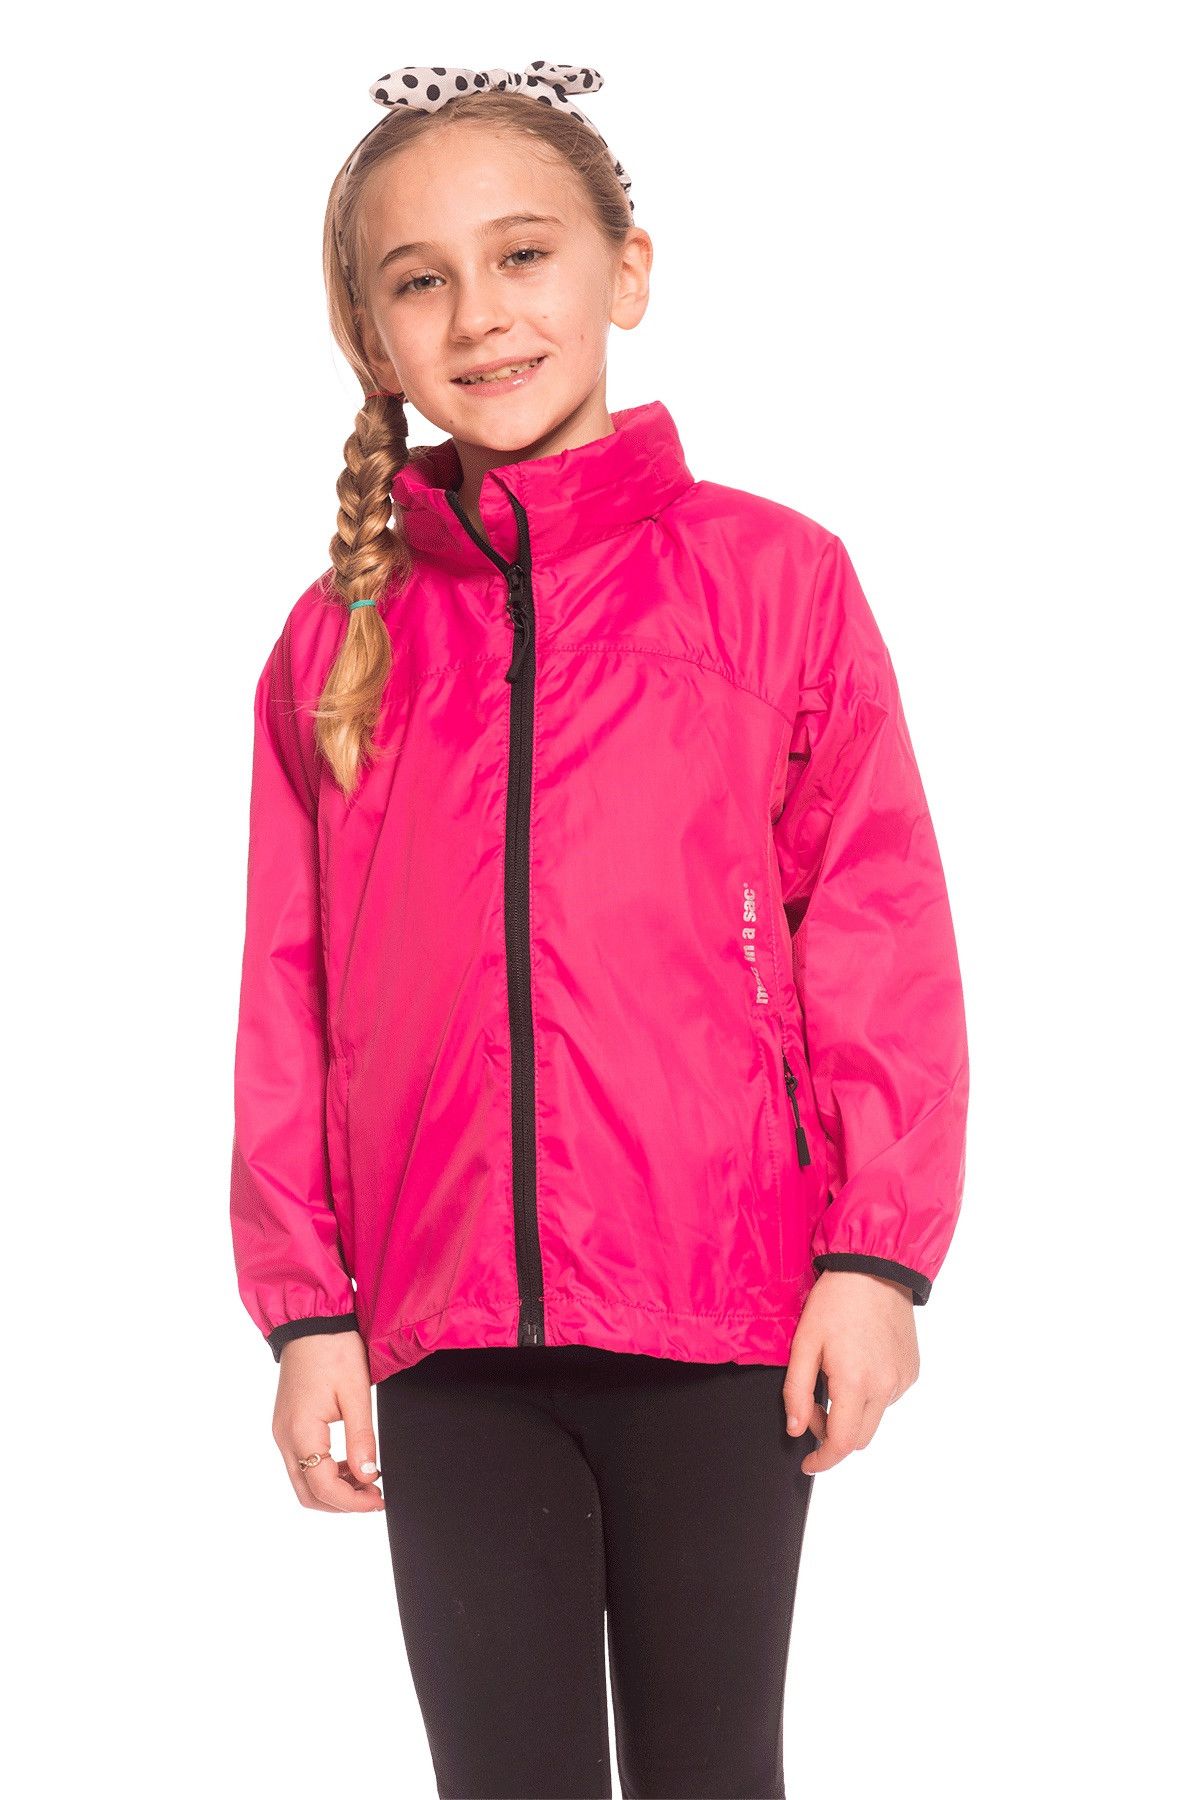 Mac in a Sac 2 Kids Packaway Jacket — Waterproof & Breathable - Target Dry